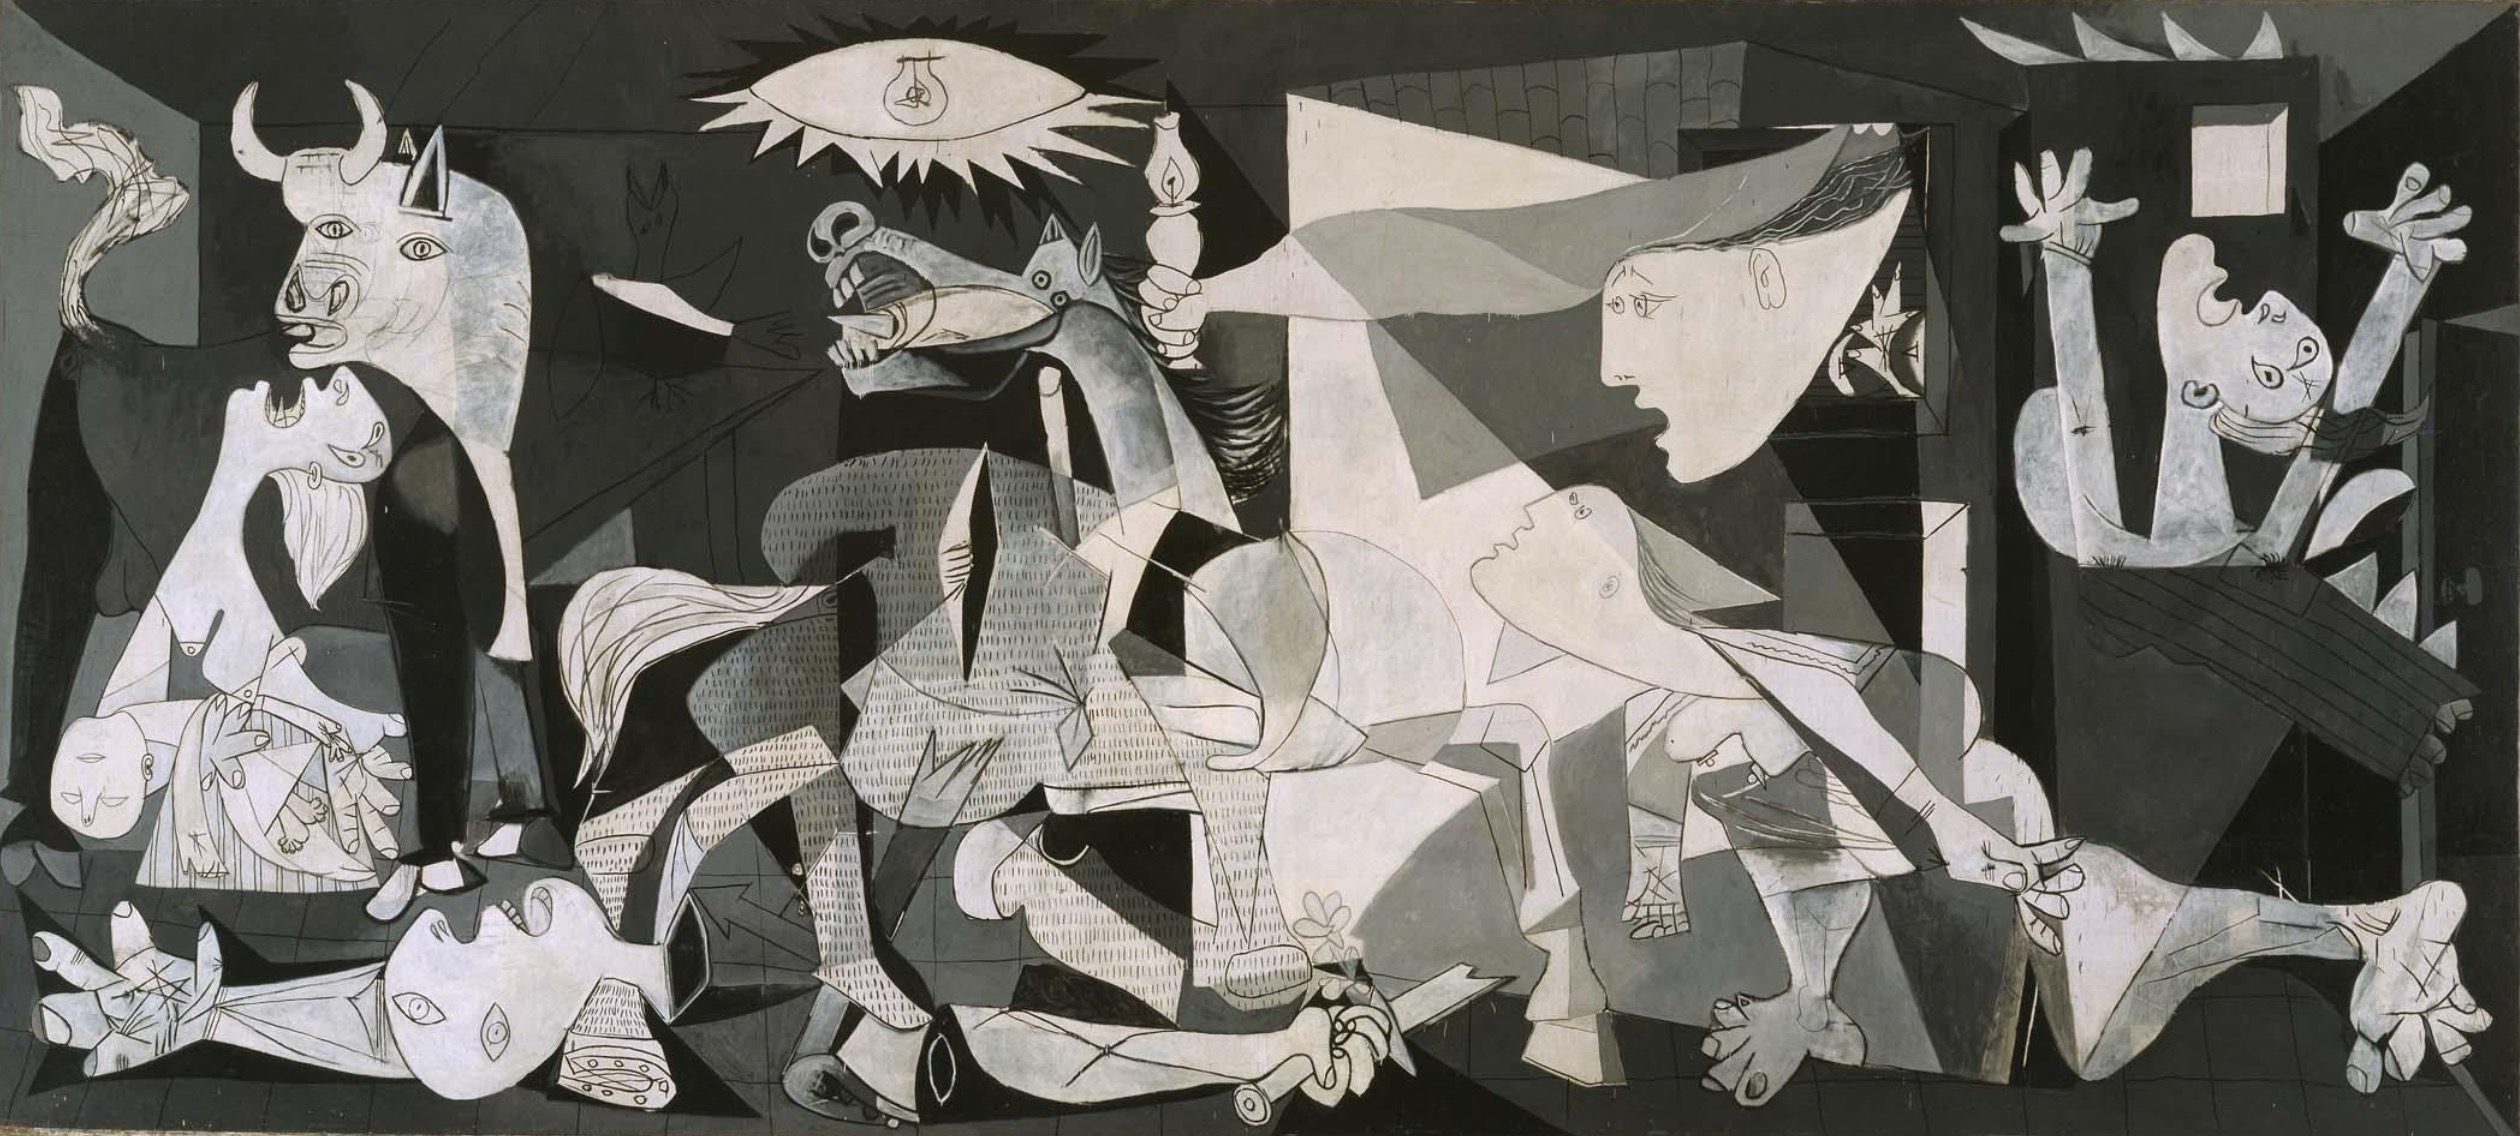 Guernica: tot allò que es veu i no veiem